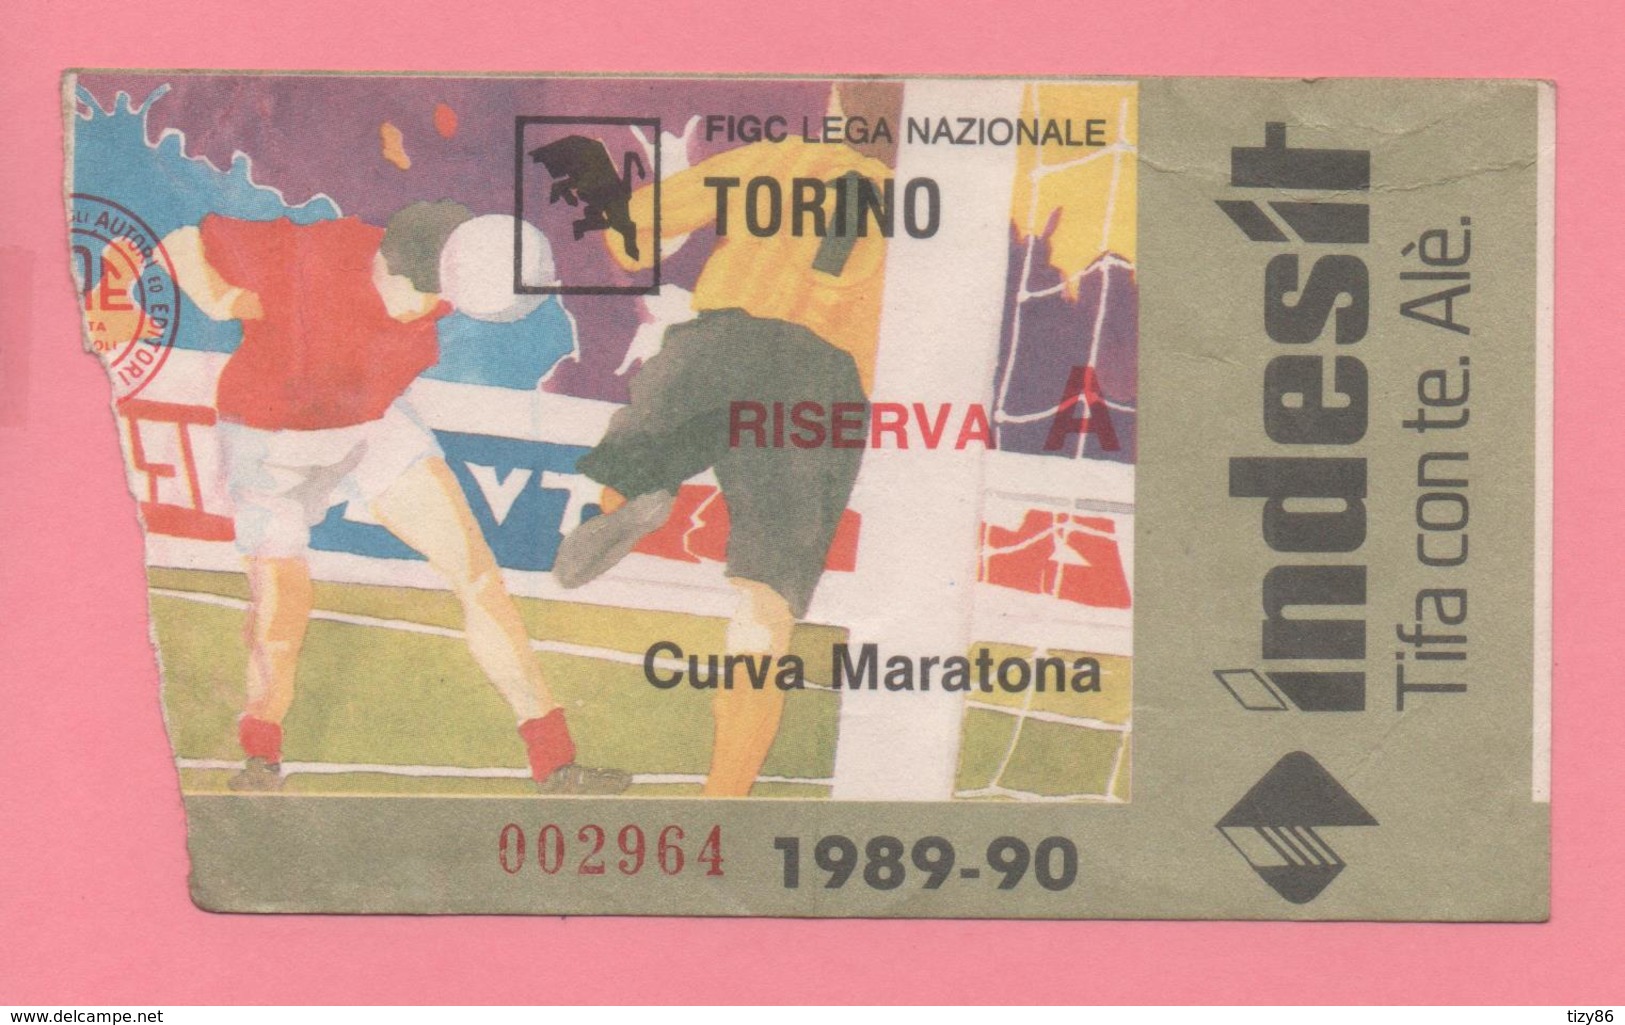 Biglietto D'ingresso Stadio Torino Riserva A 1989-90 - Tickets - Vouchers